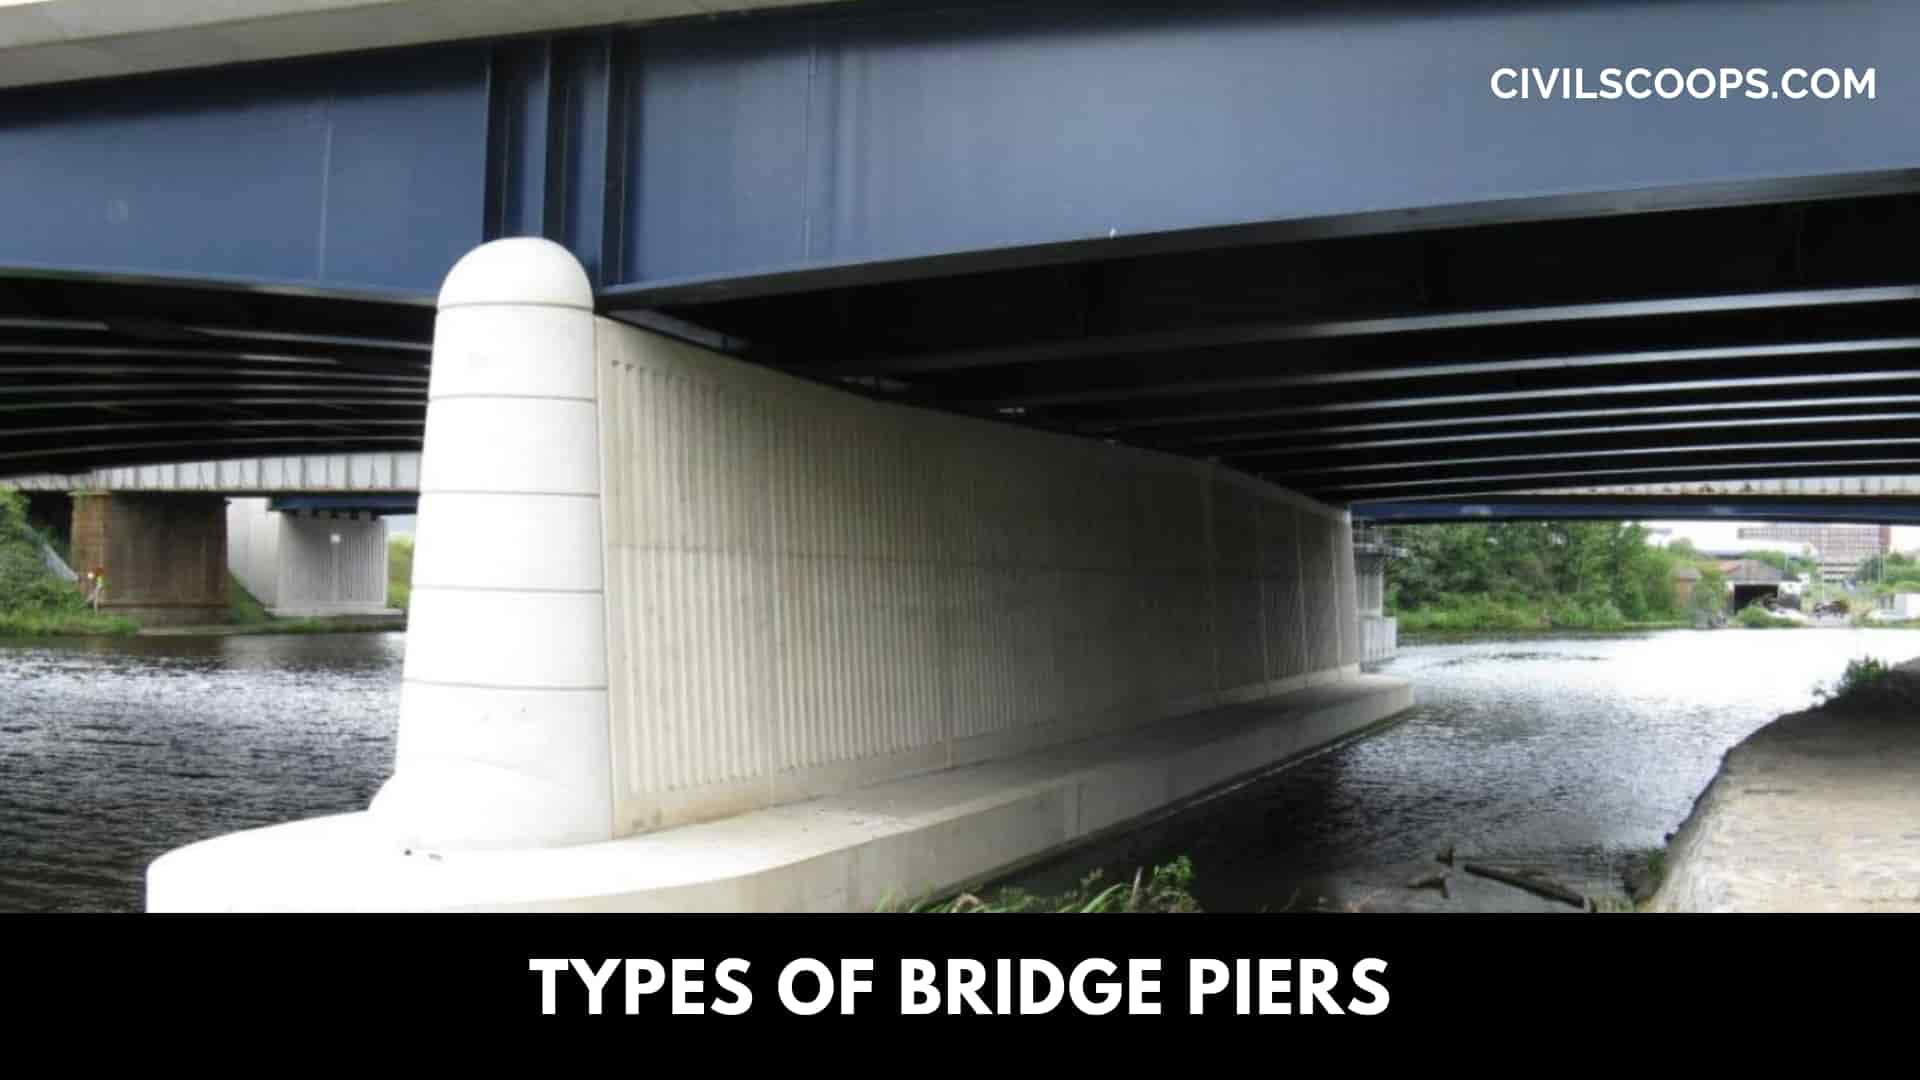 Types of Bridge Piers